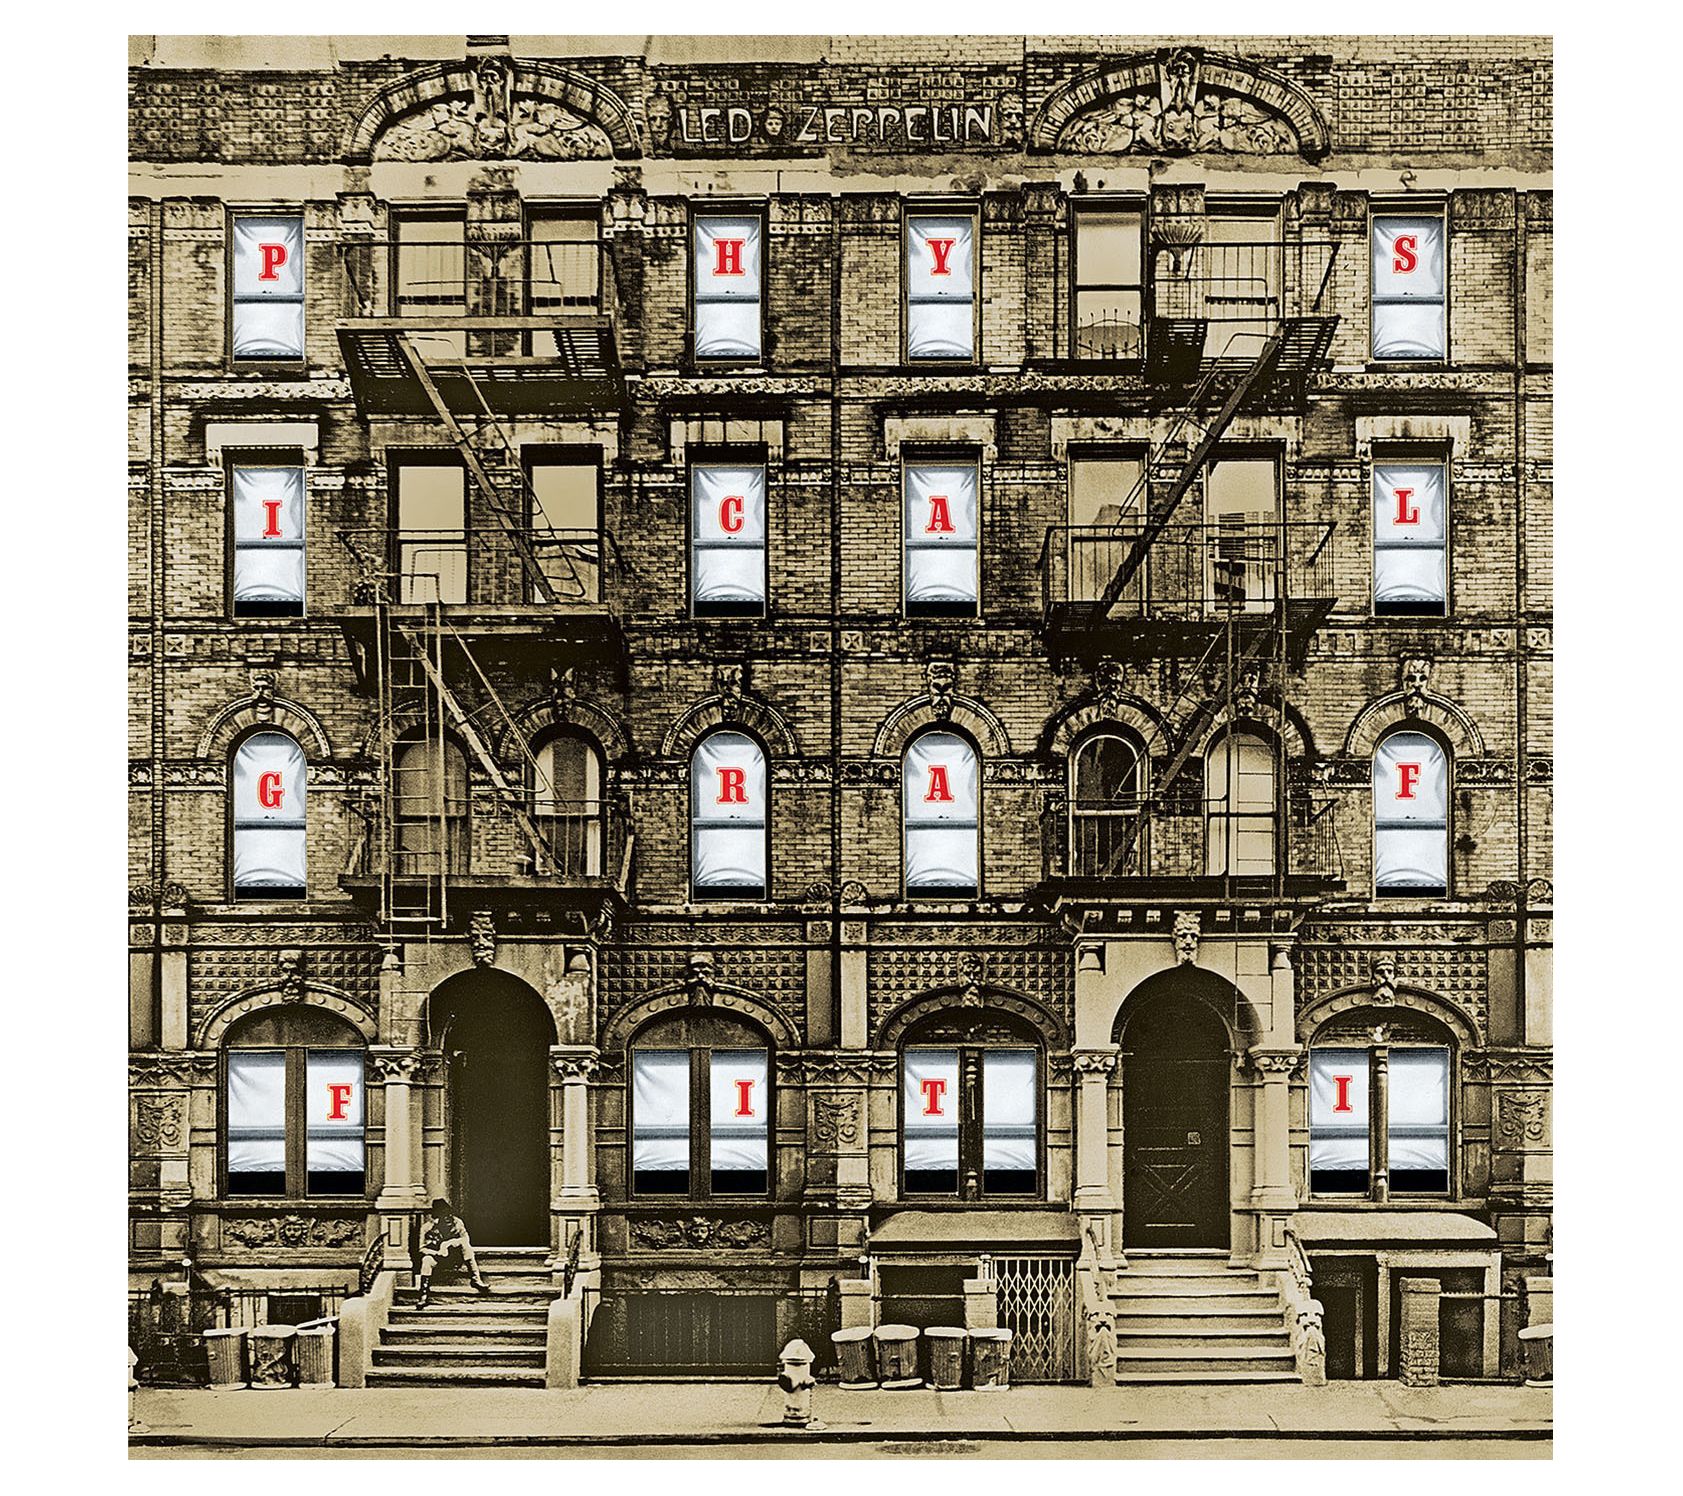 Led Zeppelin - Graffiti físico (Vinilo) – Del Bravo Record Shop